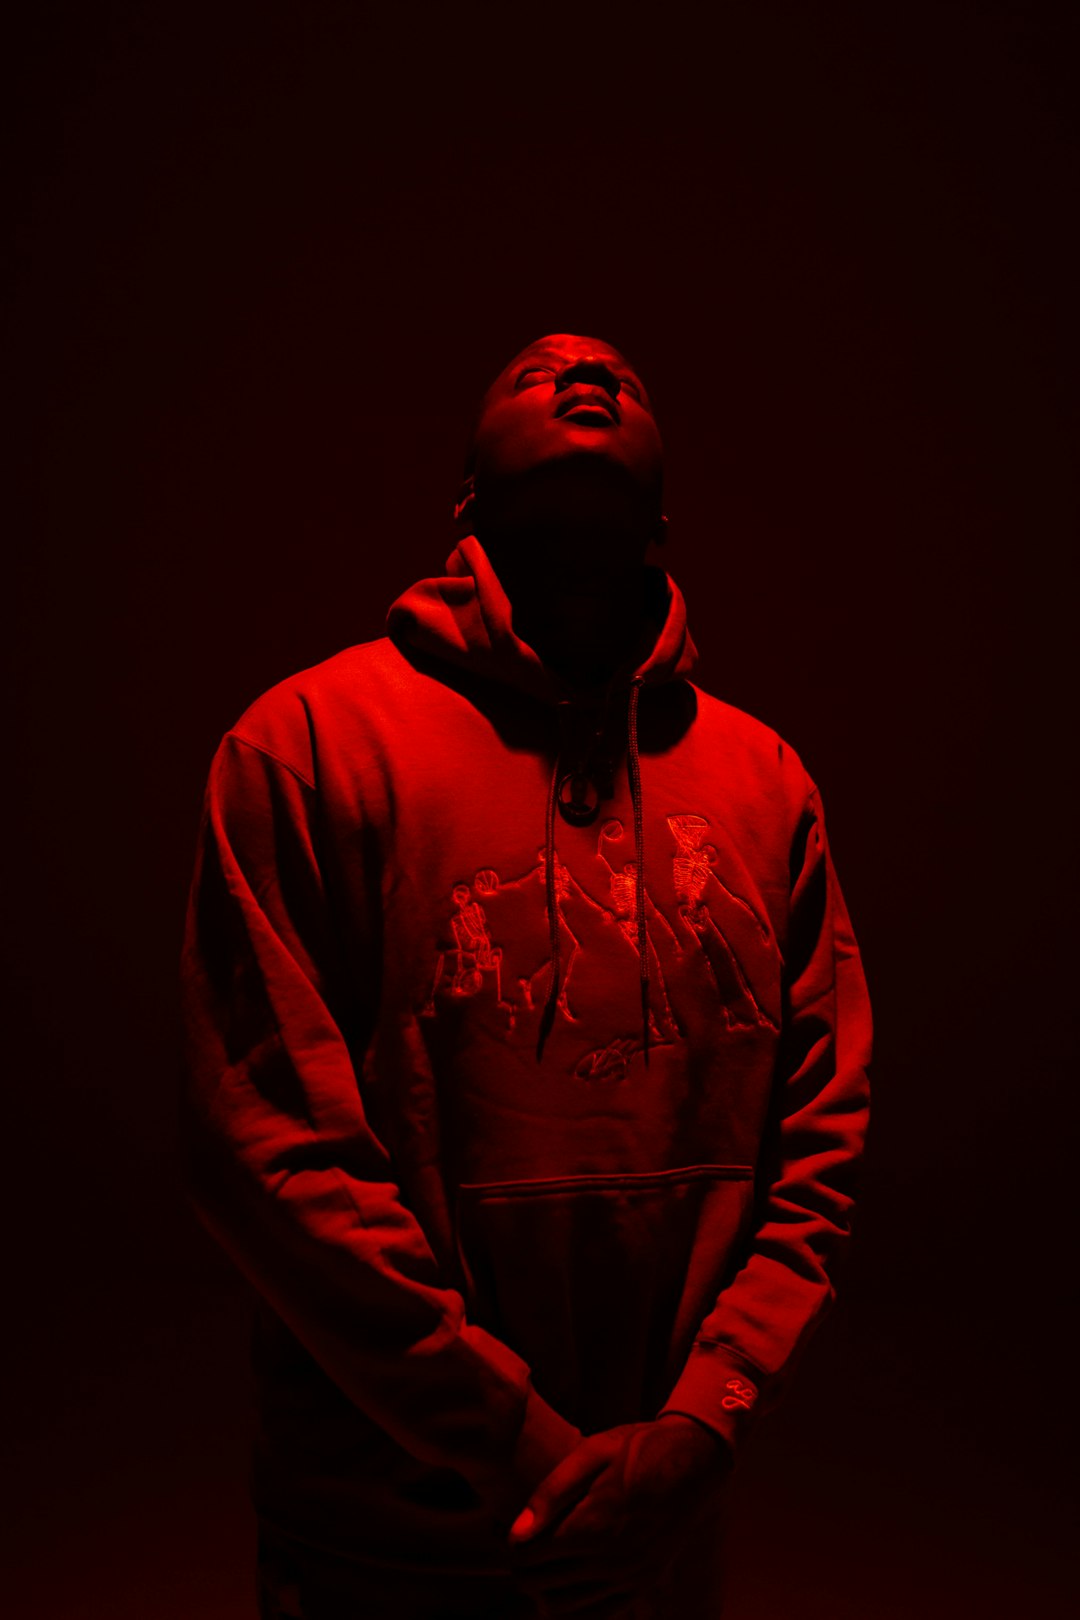 man in red hoodie standing